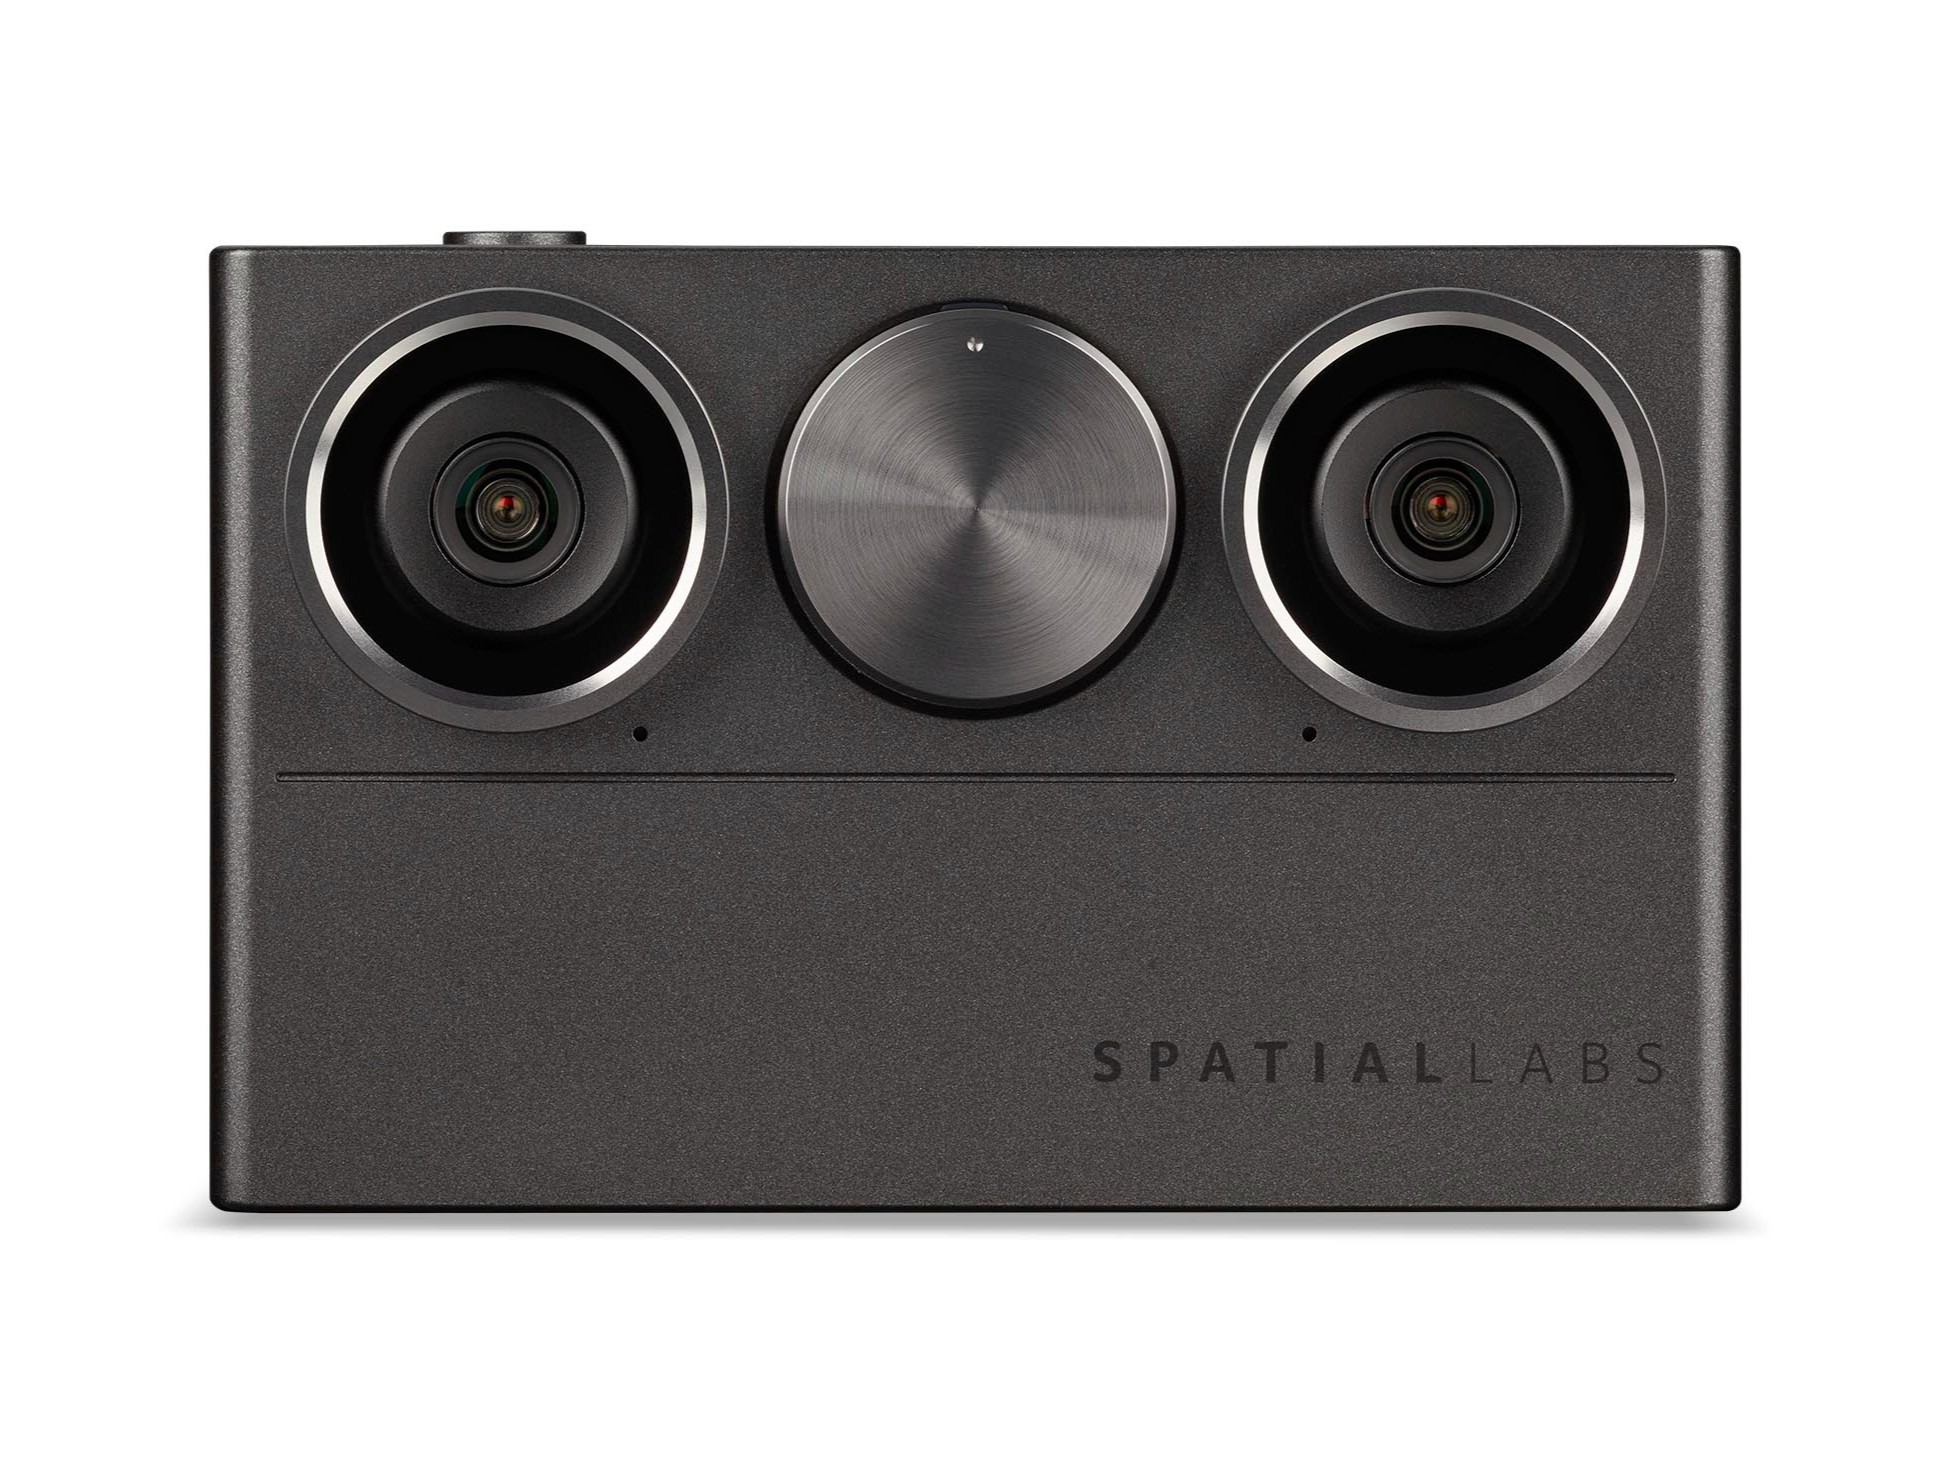 宏碁推出 SpatialLabs Eyes 3D双镜头相机，用创新之眼纪录美好瞬间